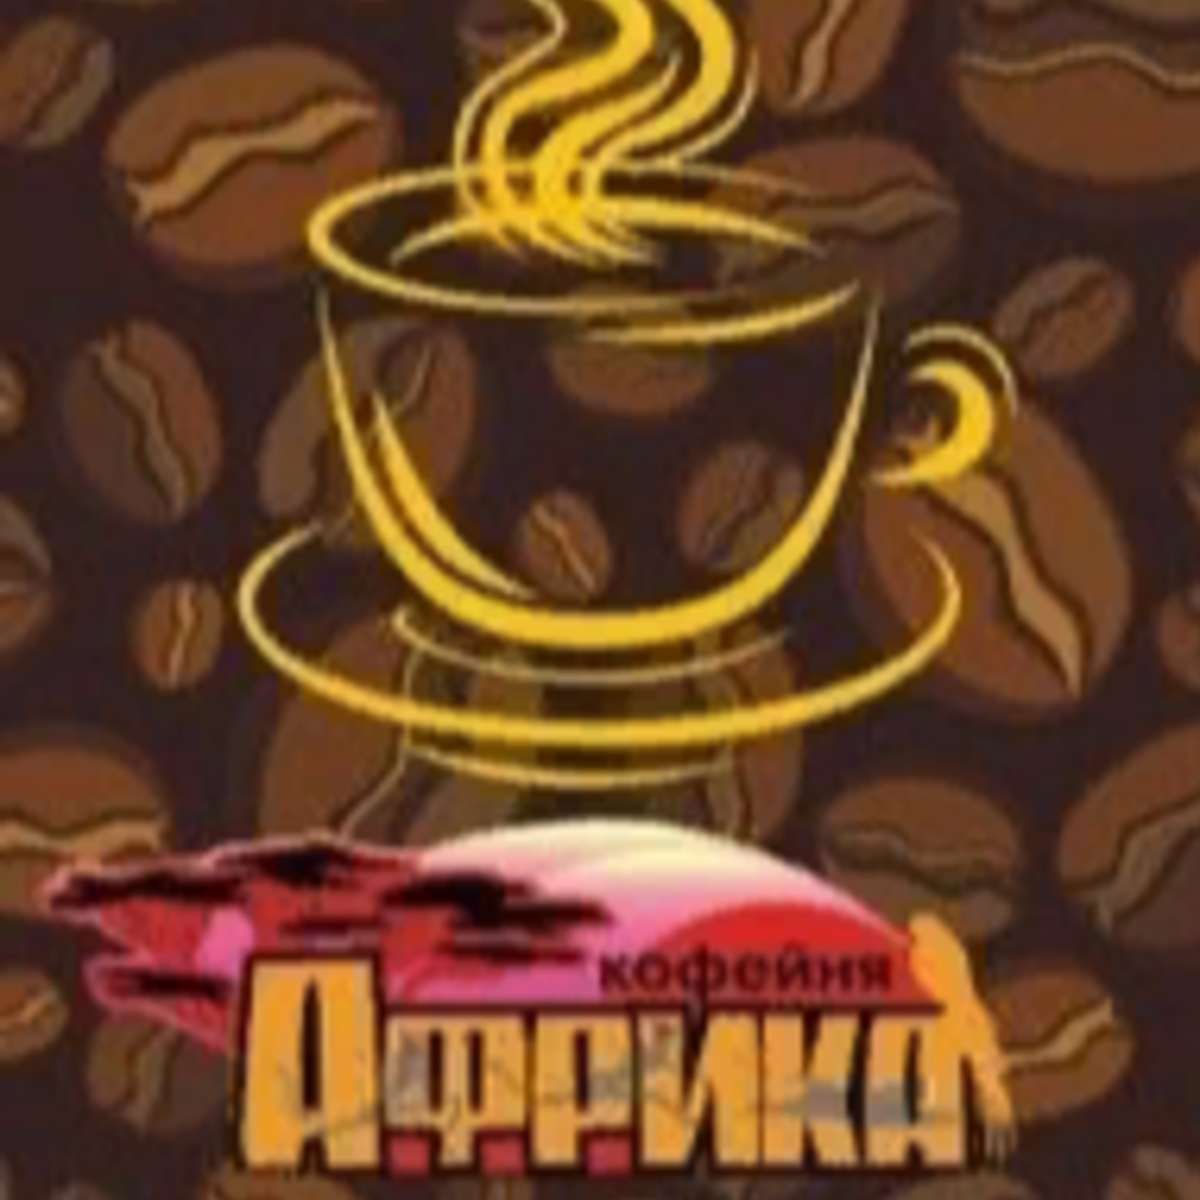 кафе африка нижний новгород